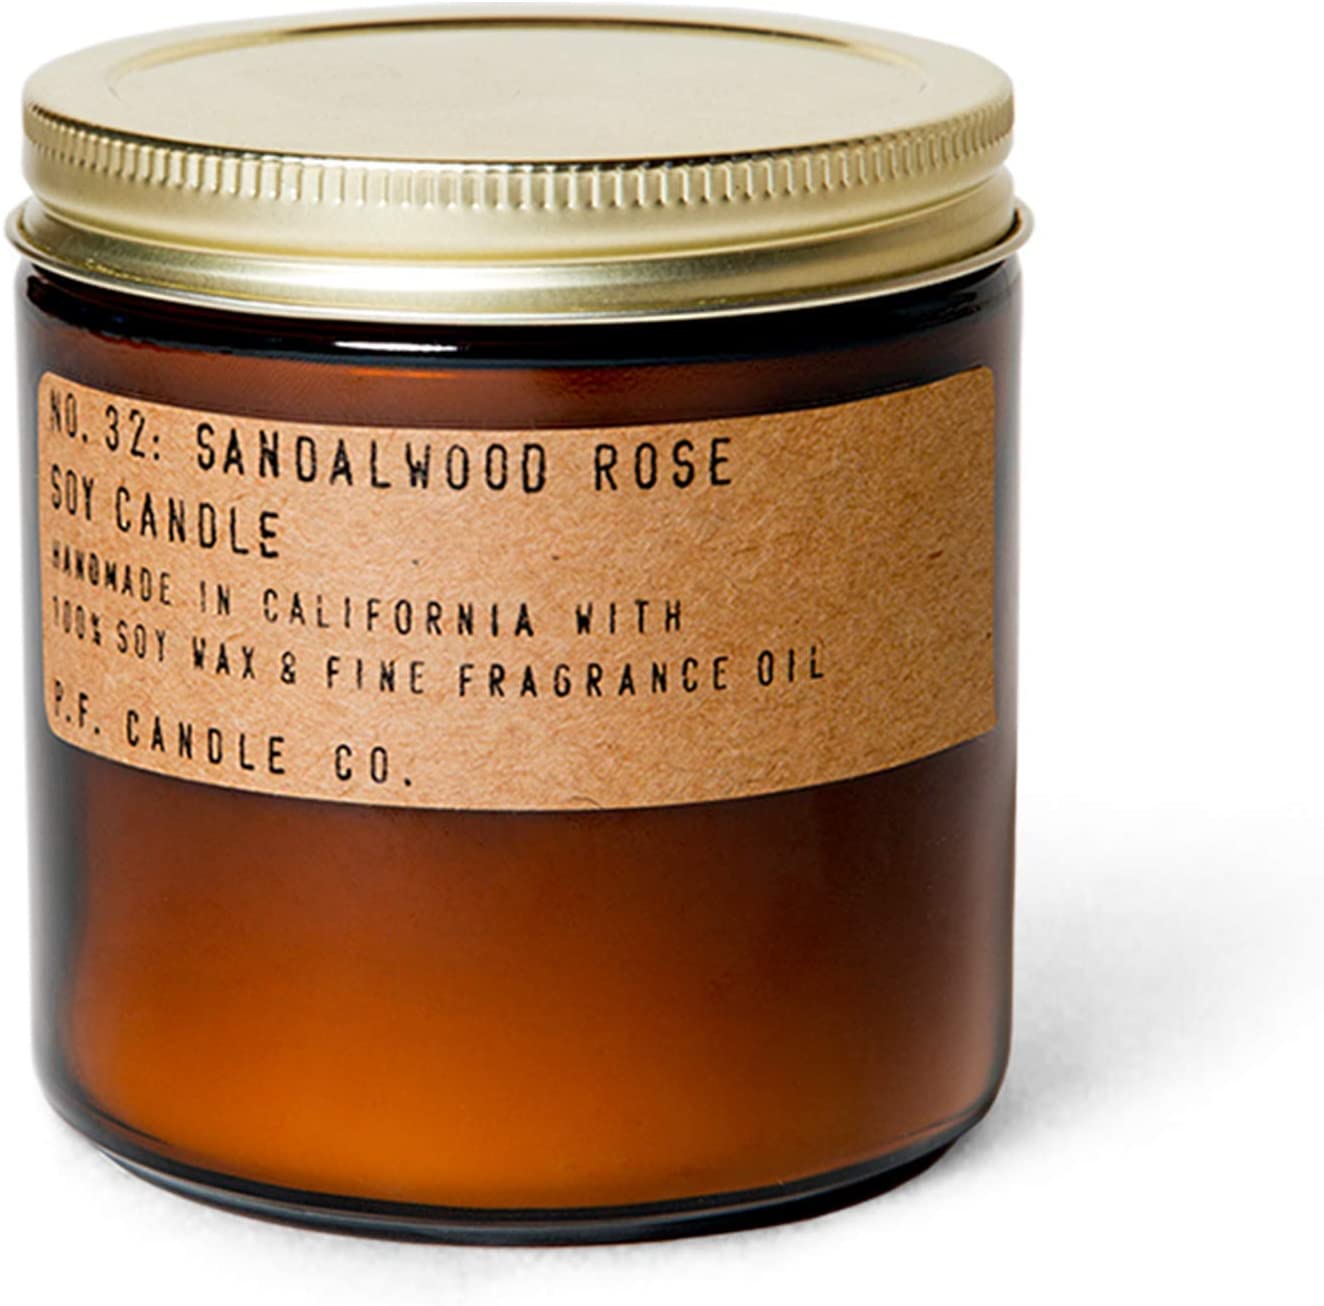 P.F. Candle Co. Sandalwood Rose Large Soy Candle.jpg